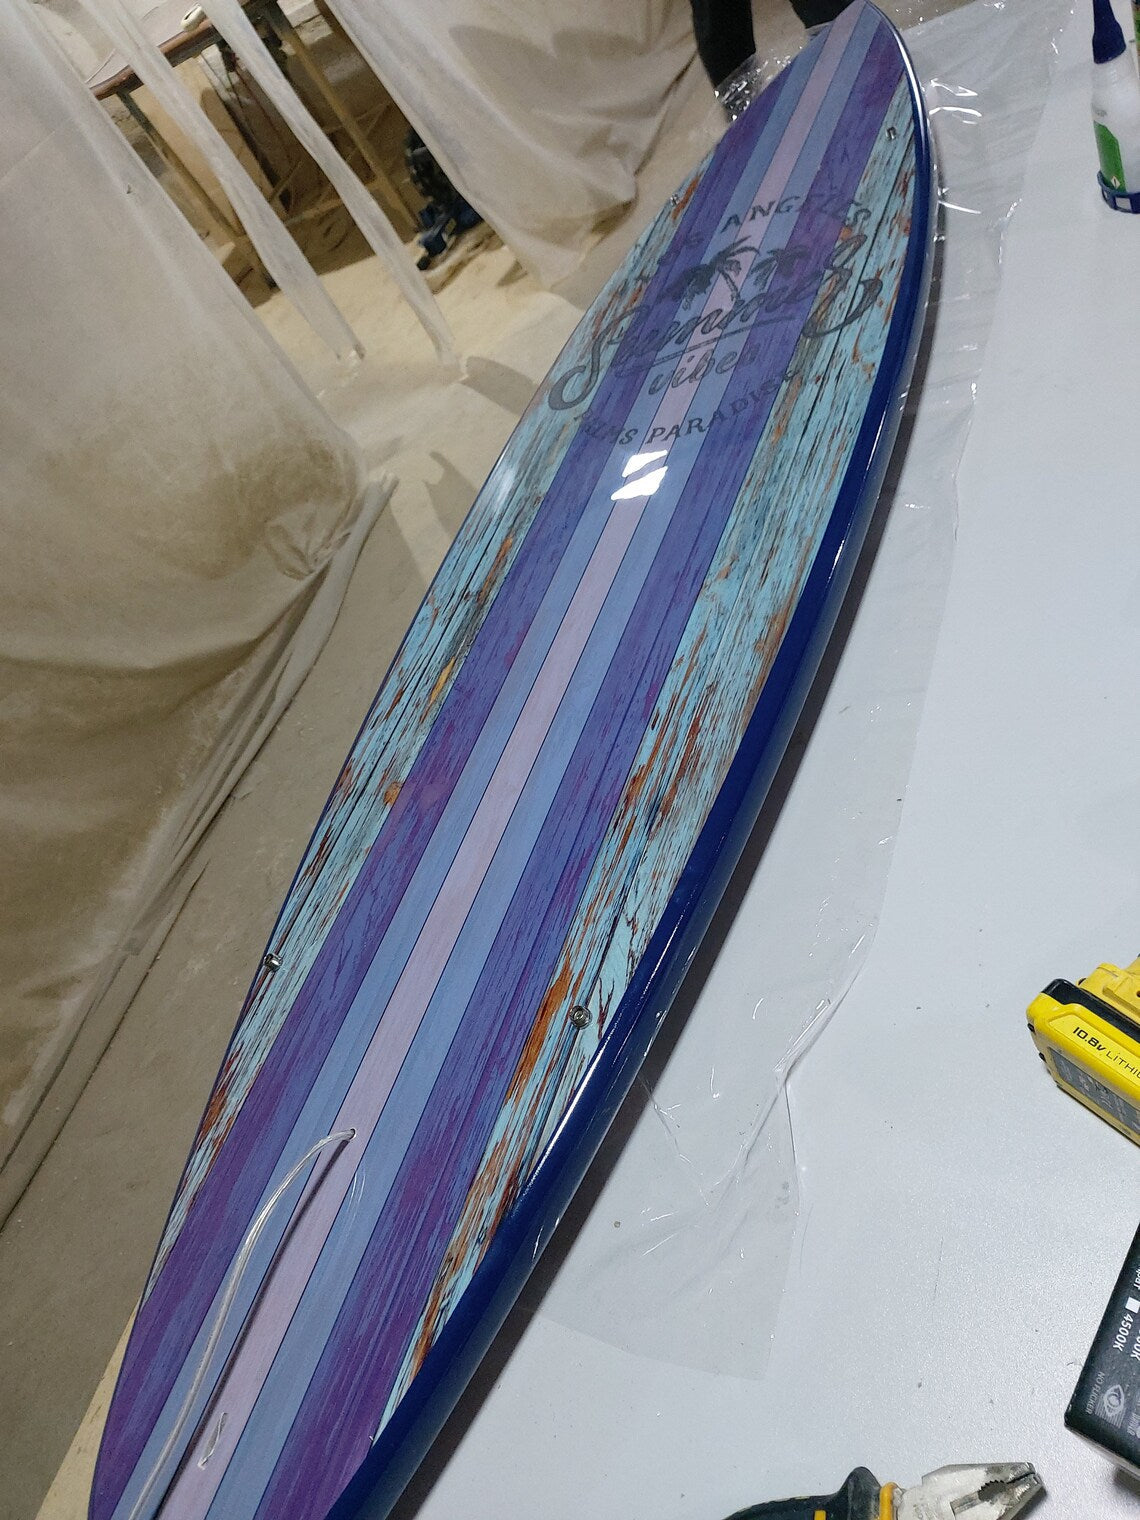 66 inch Surfboard Shaped Ceiling Chandelier - Pool Billiard Table Light